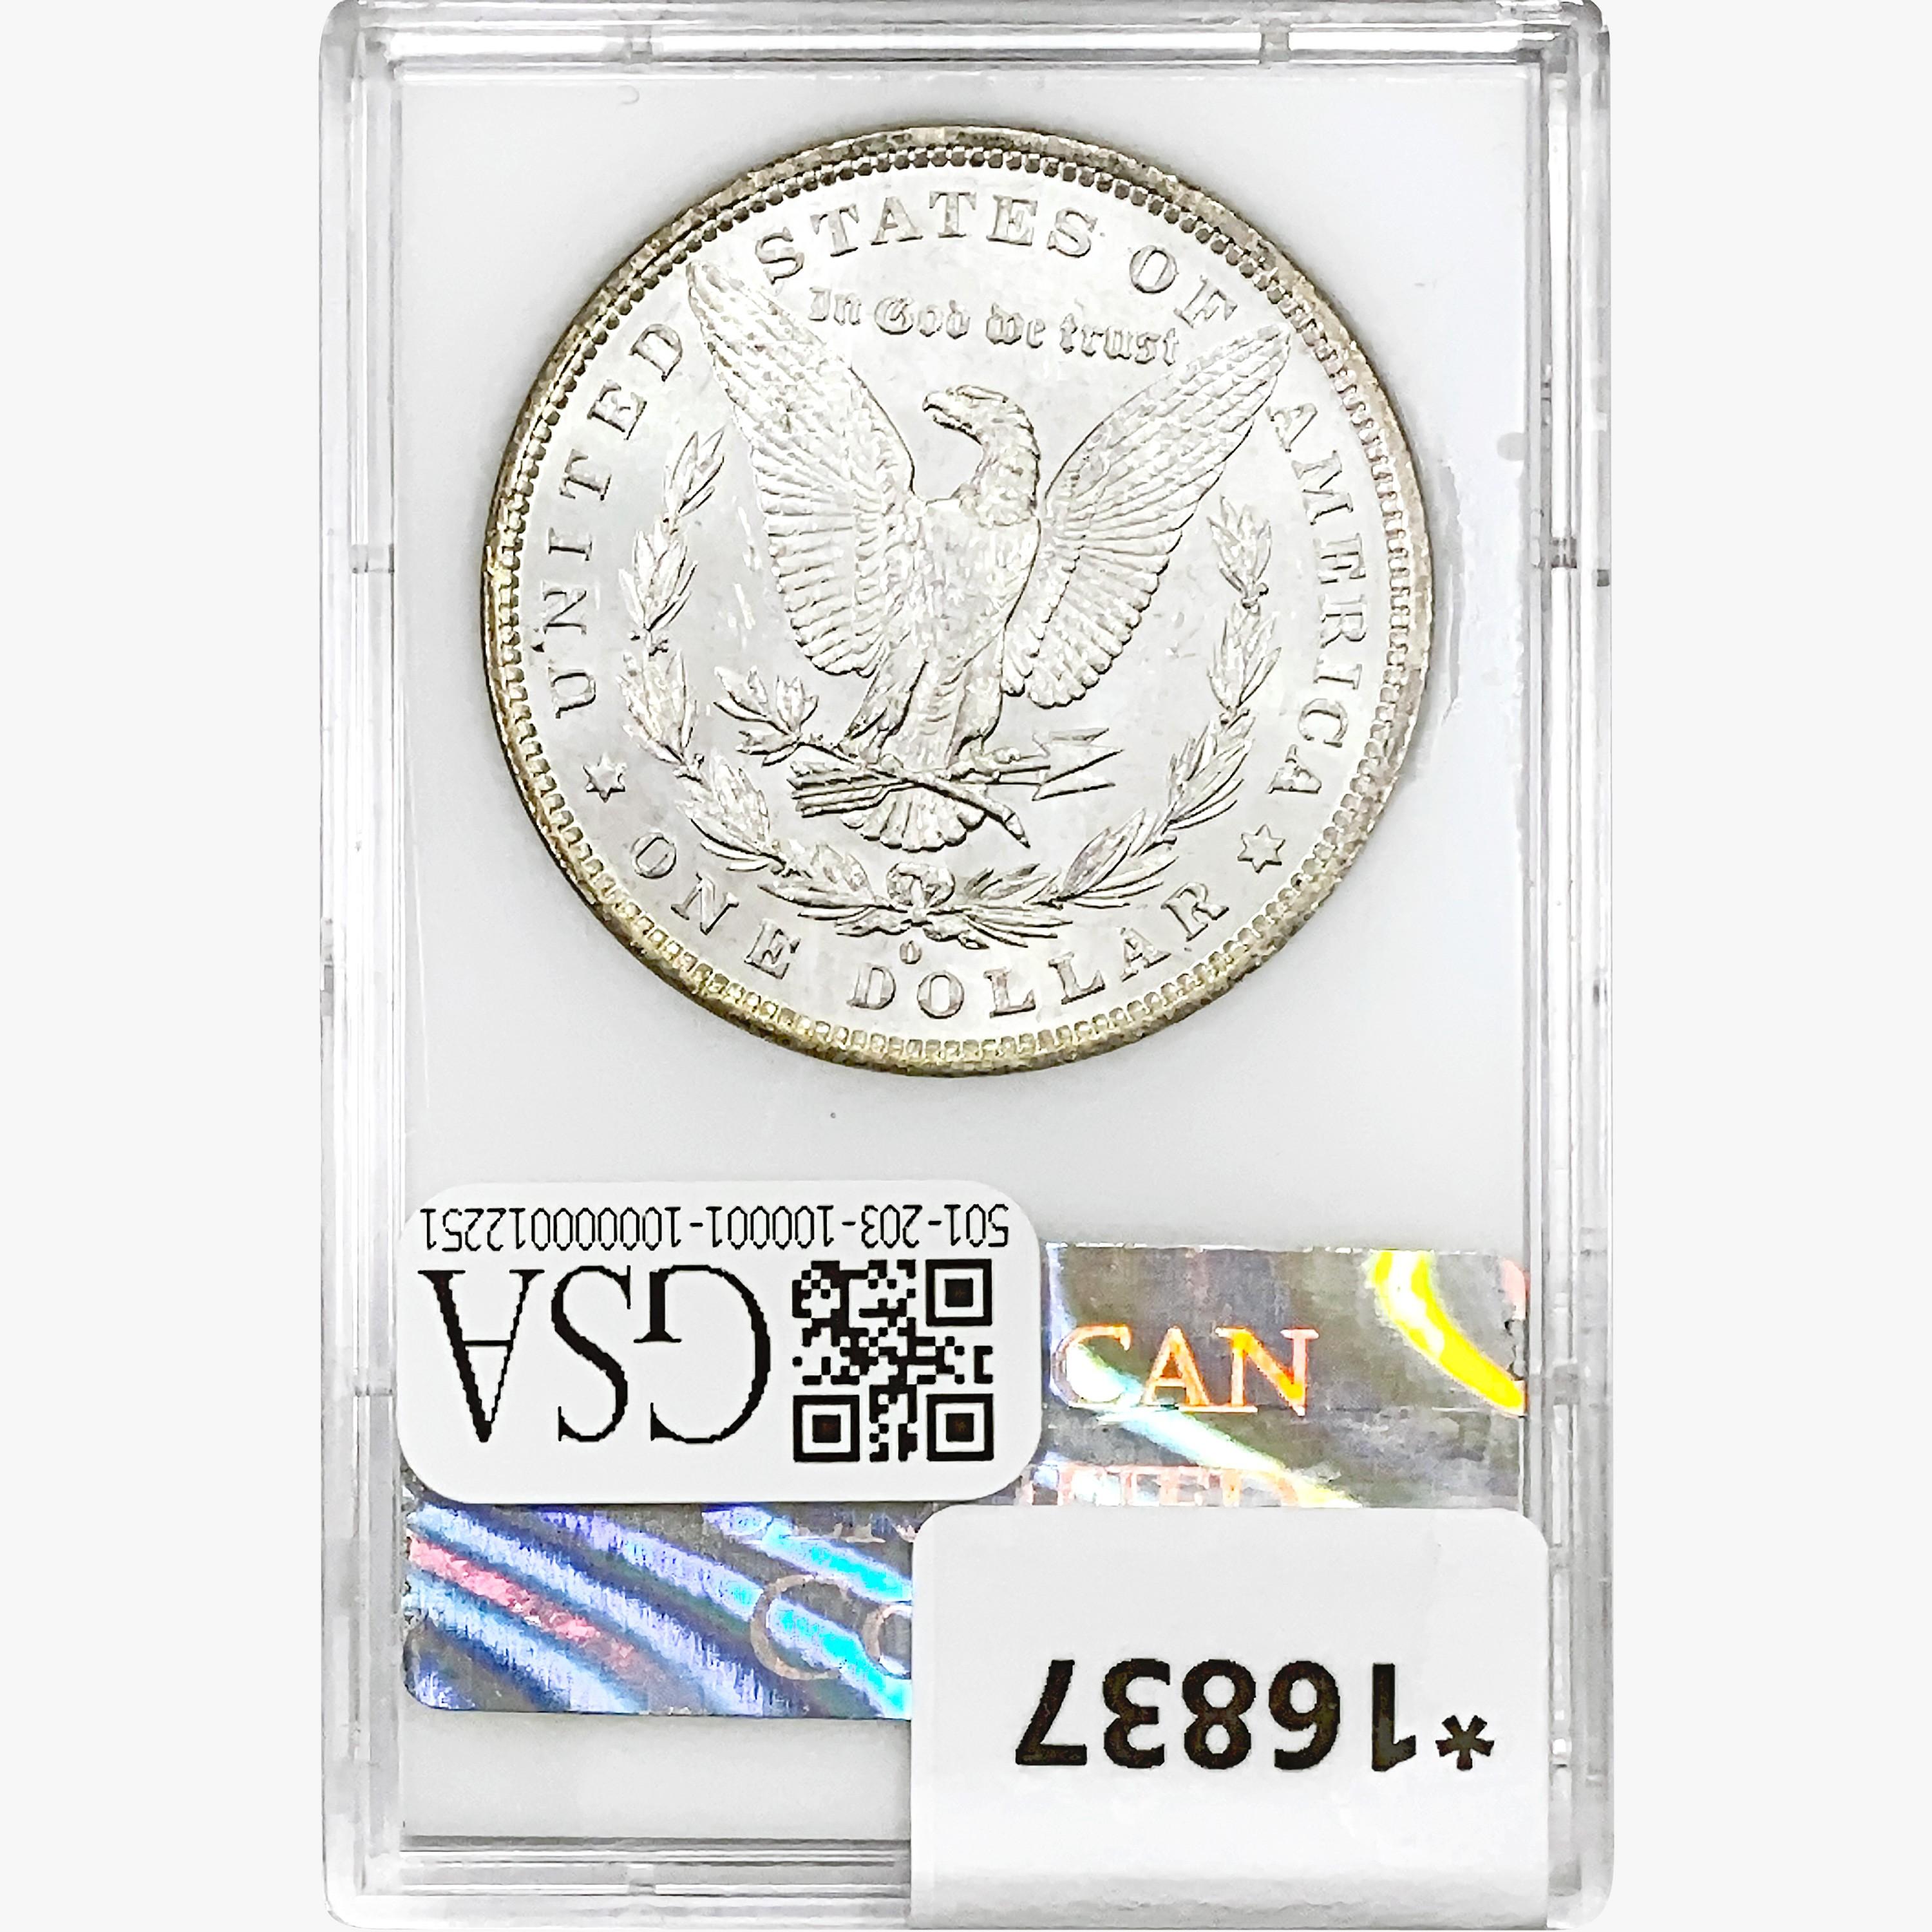 1882-O Morgan Silver Dollar ACC MS63